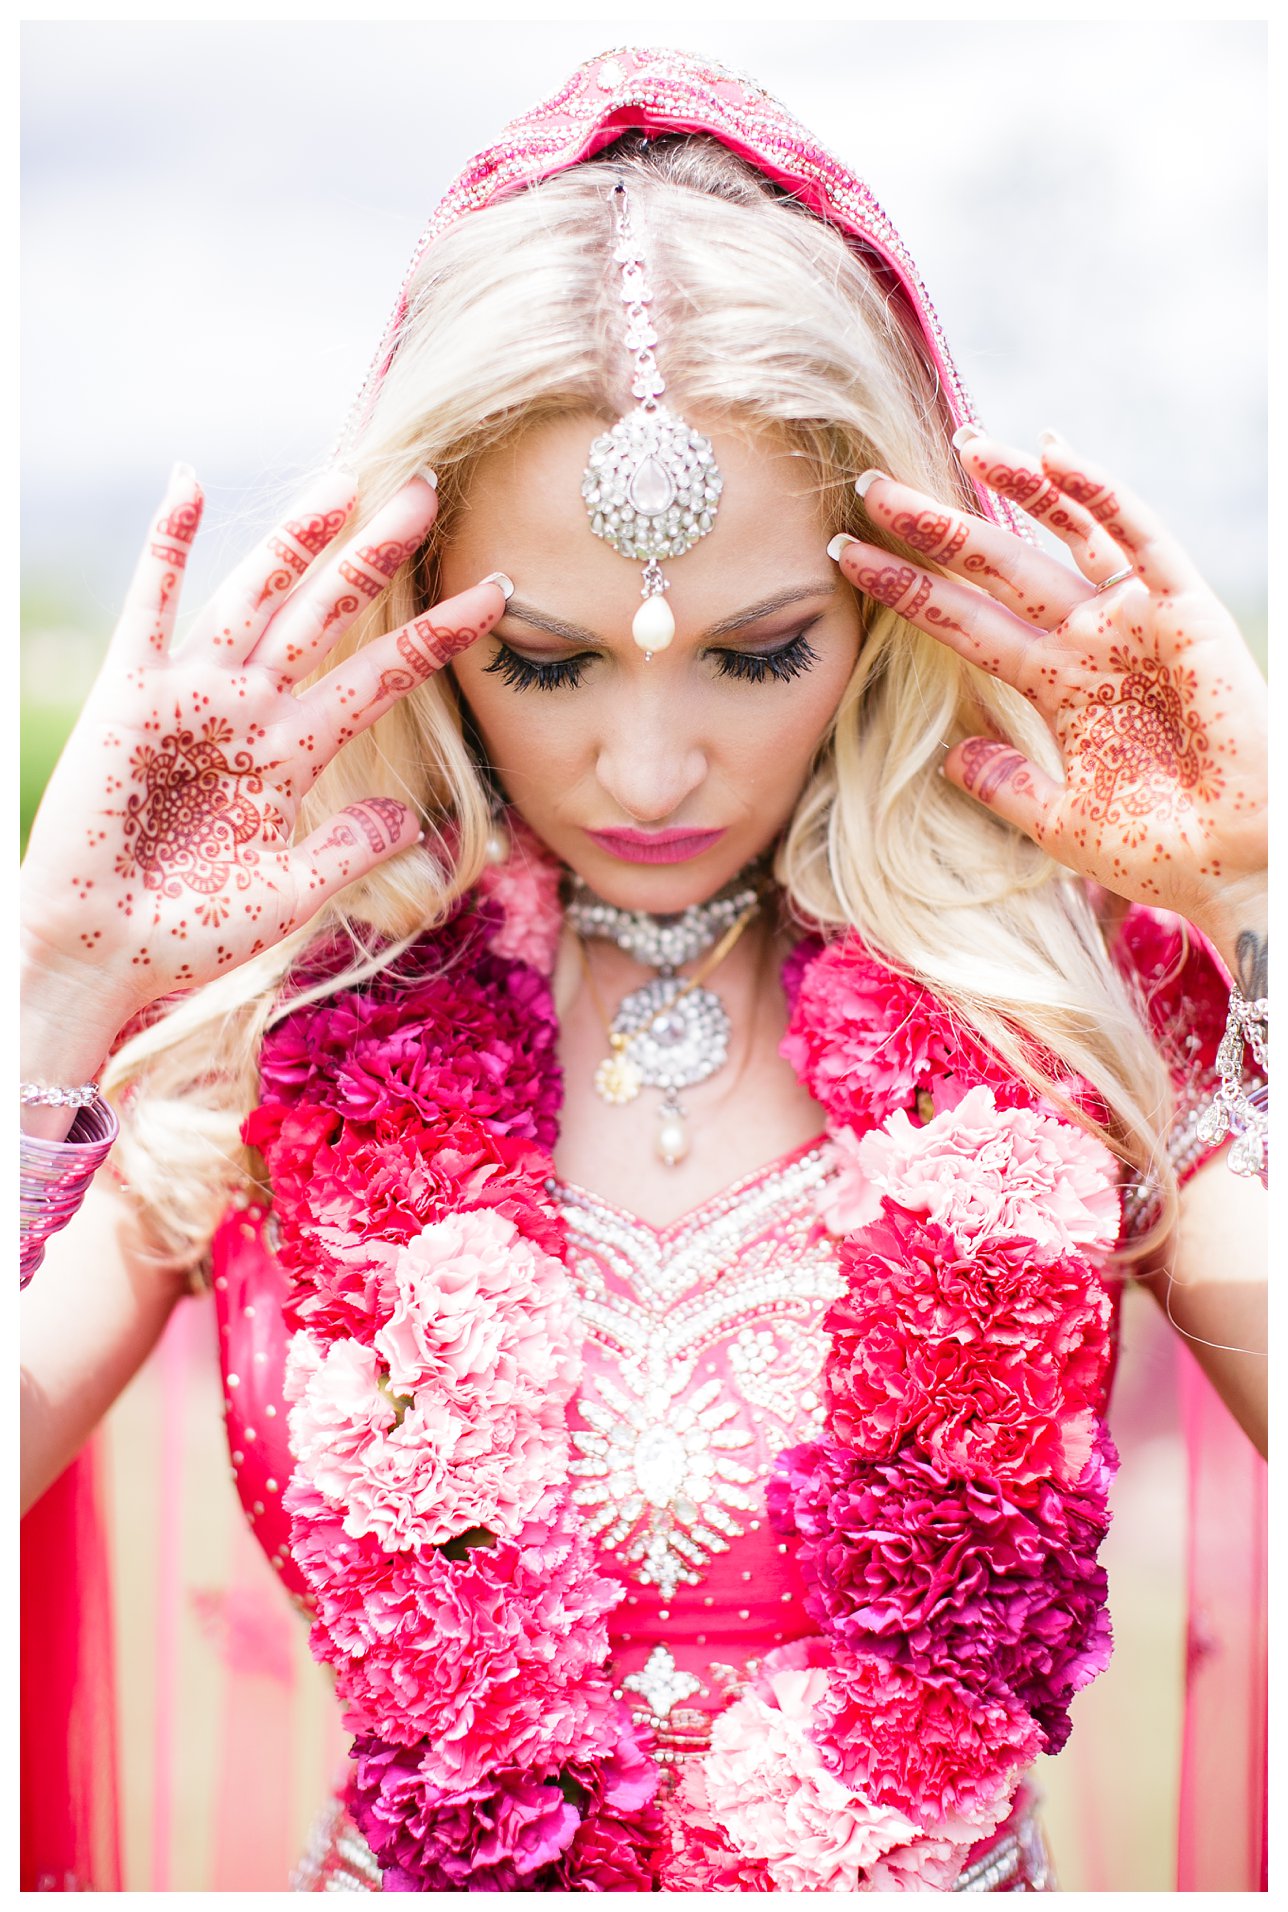 Indian Wedding in Maui - Scottsdale Wedding Photographer | Rachel Solomon Photography_2717